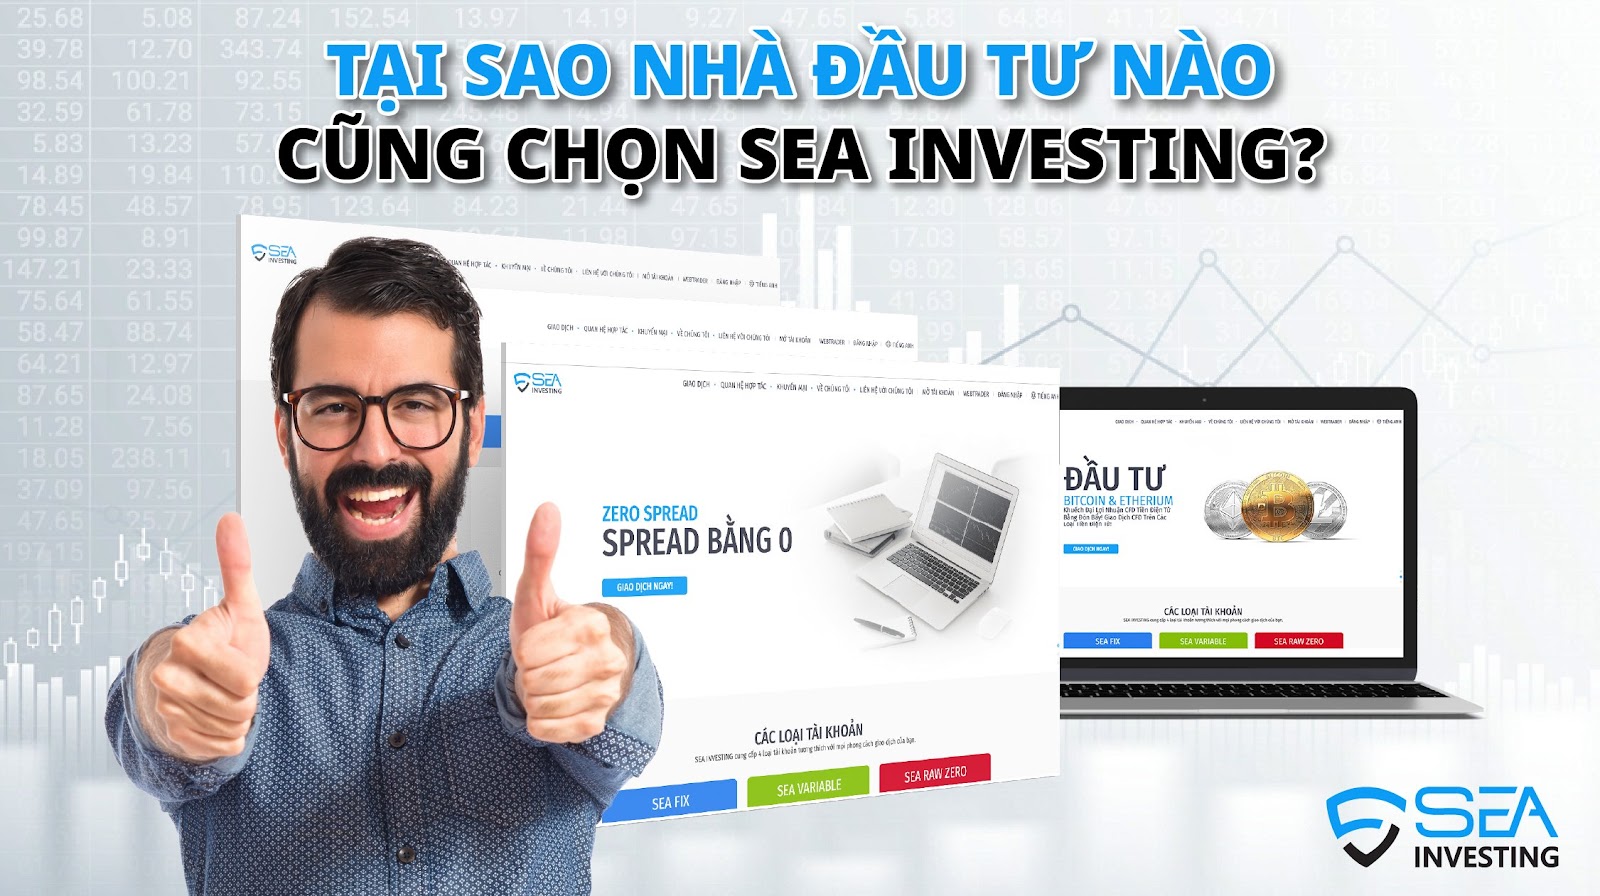 sea-investing-uy-tin-dem-lai-loi-ich-gi-cho-nha-dau-tu